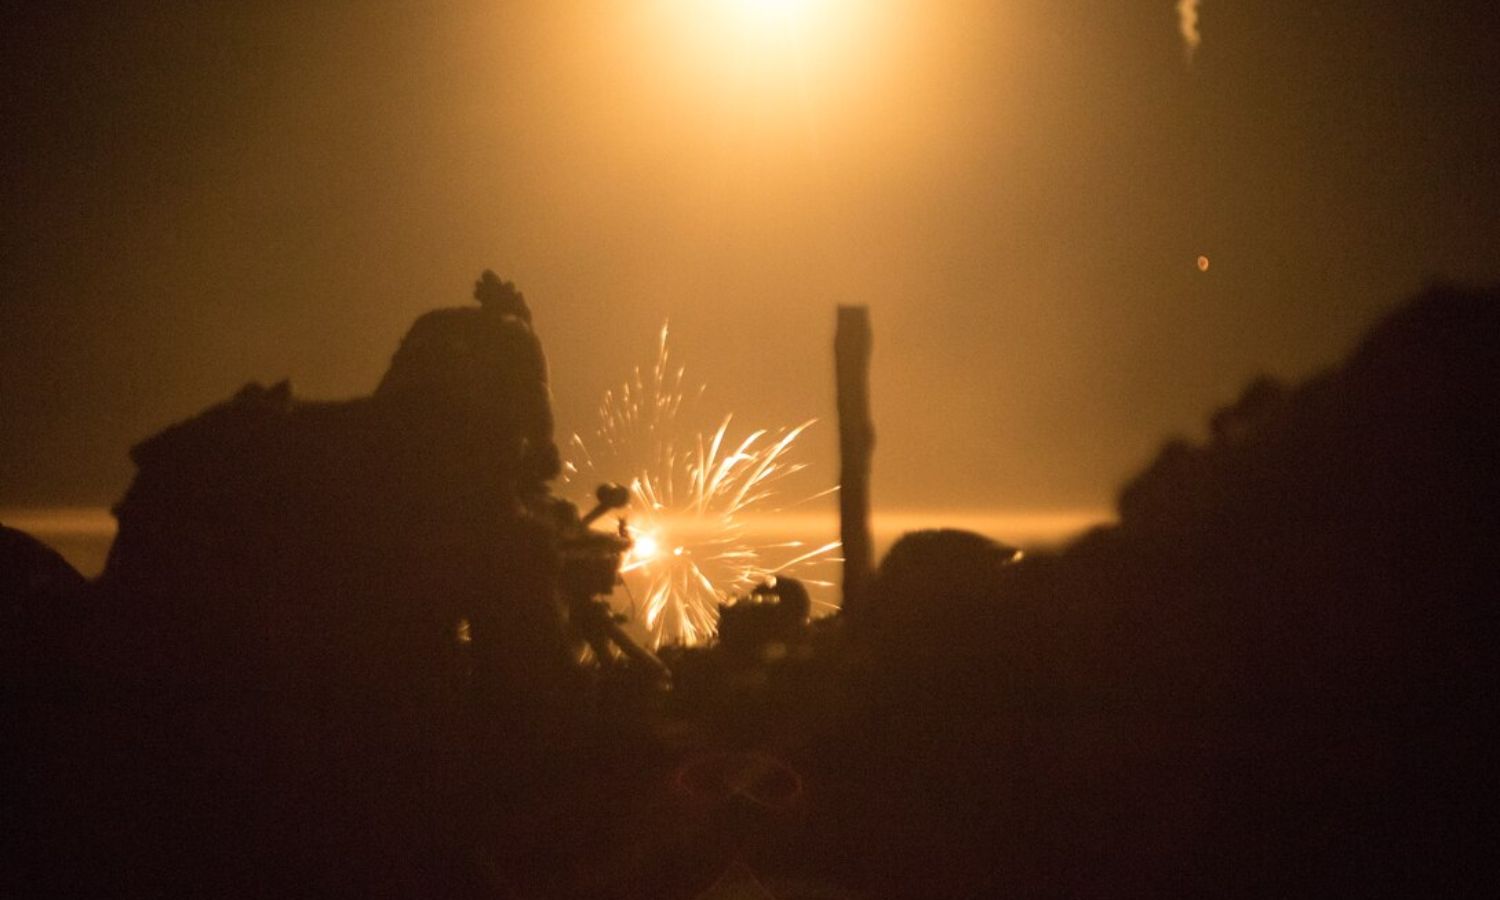 جندي من قوات مشاة البحرية الأمريكية خلال تدريبات على استخدام المدفع الرشاش من الكتيبة الثالثة بقاعدة "التنف" شرقي سوريا- 7 من أيلول 2023 (سينتكوم)